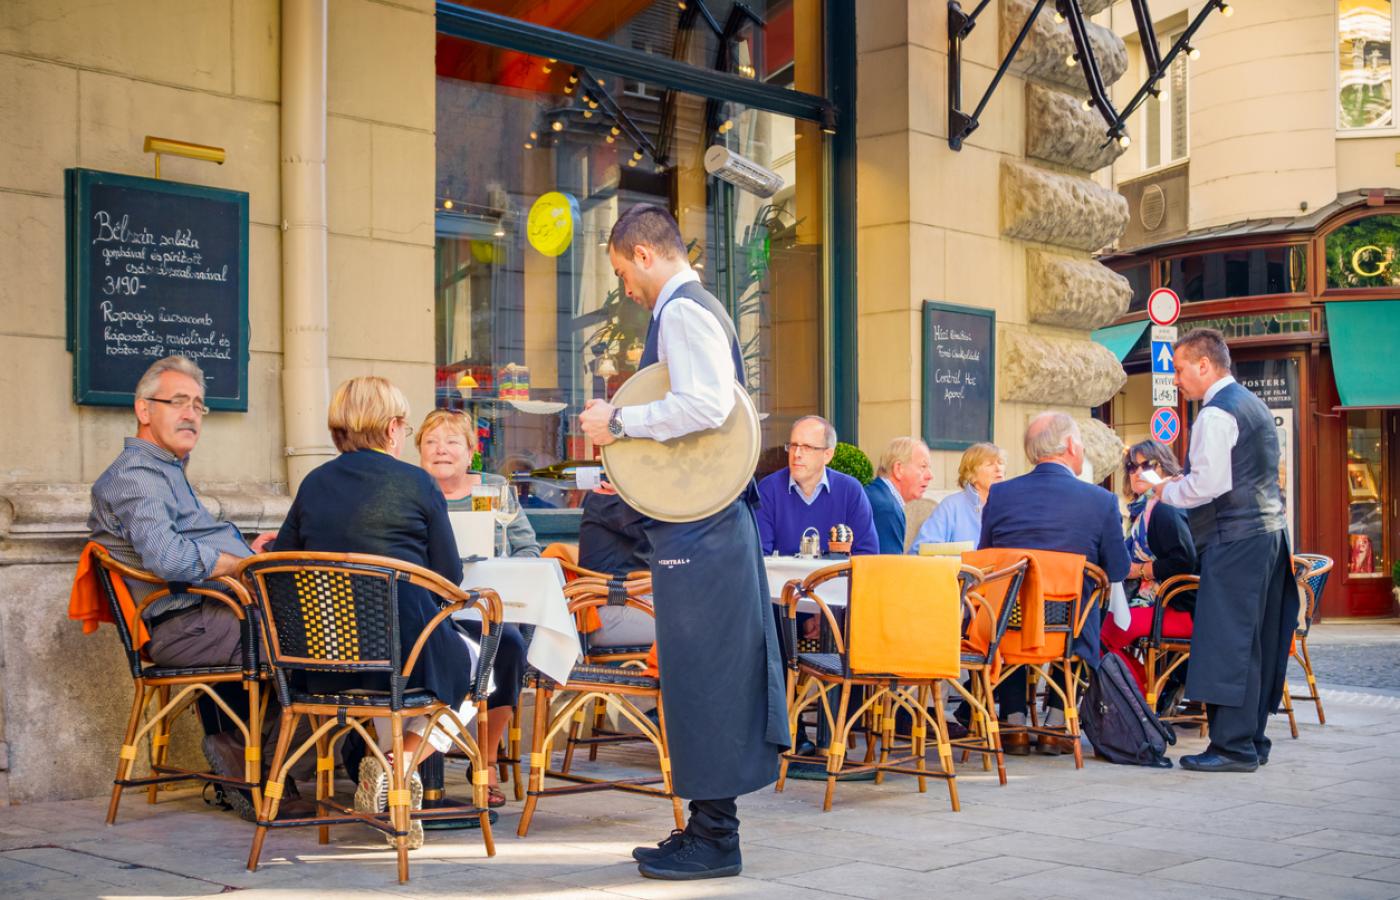 Kawiarnia/ restauracja w centrum Budapesztu (Fot. iStock)